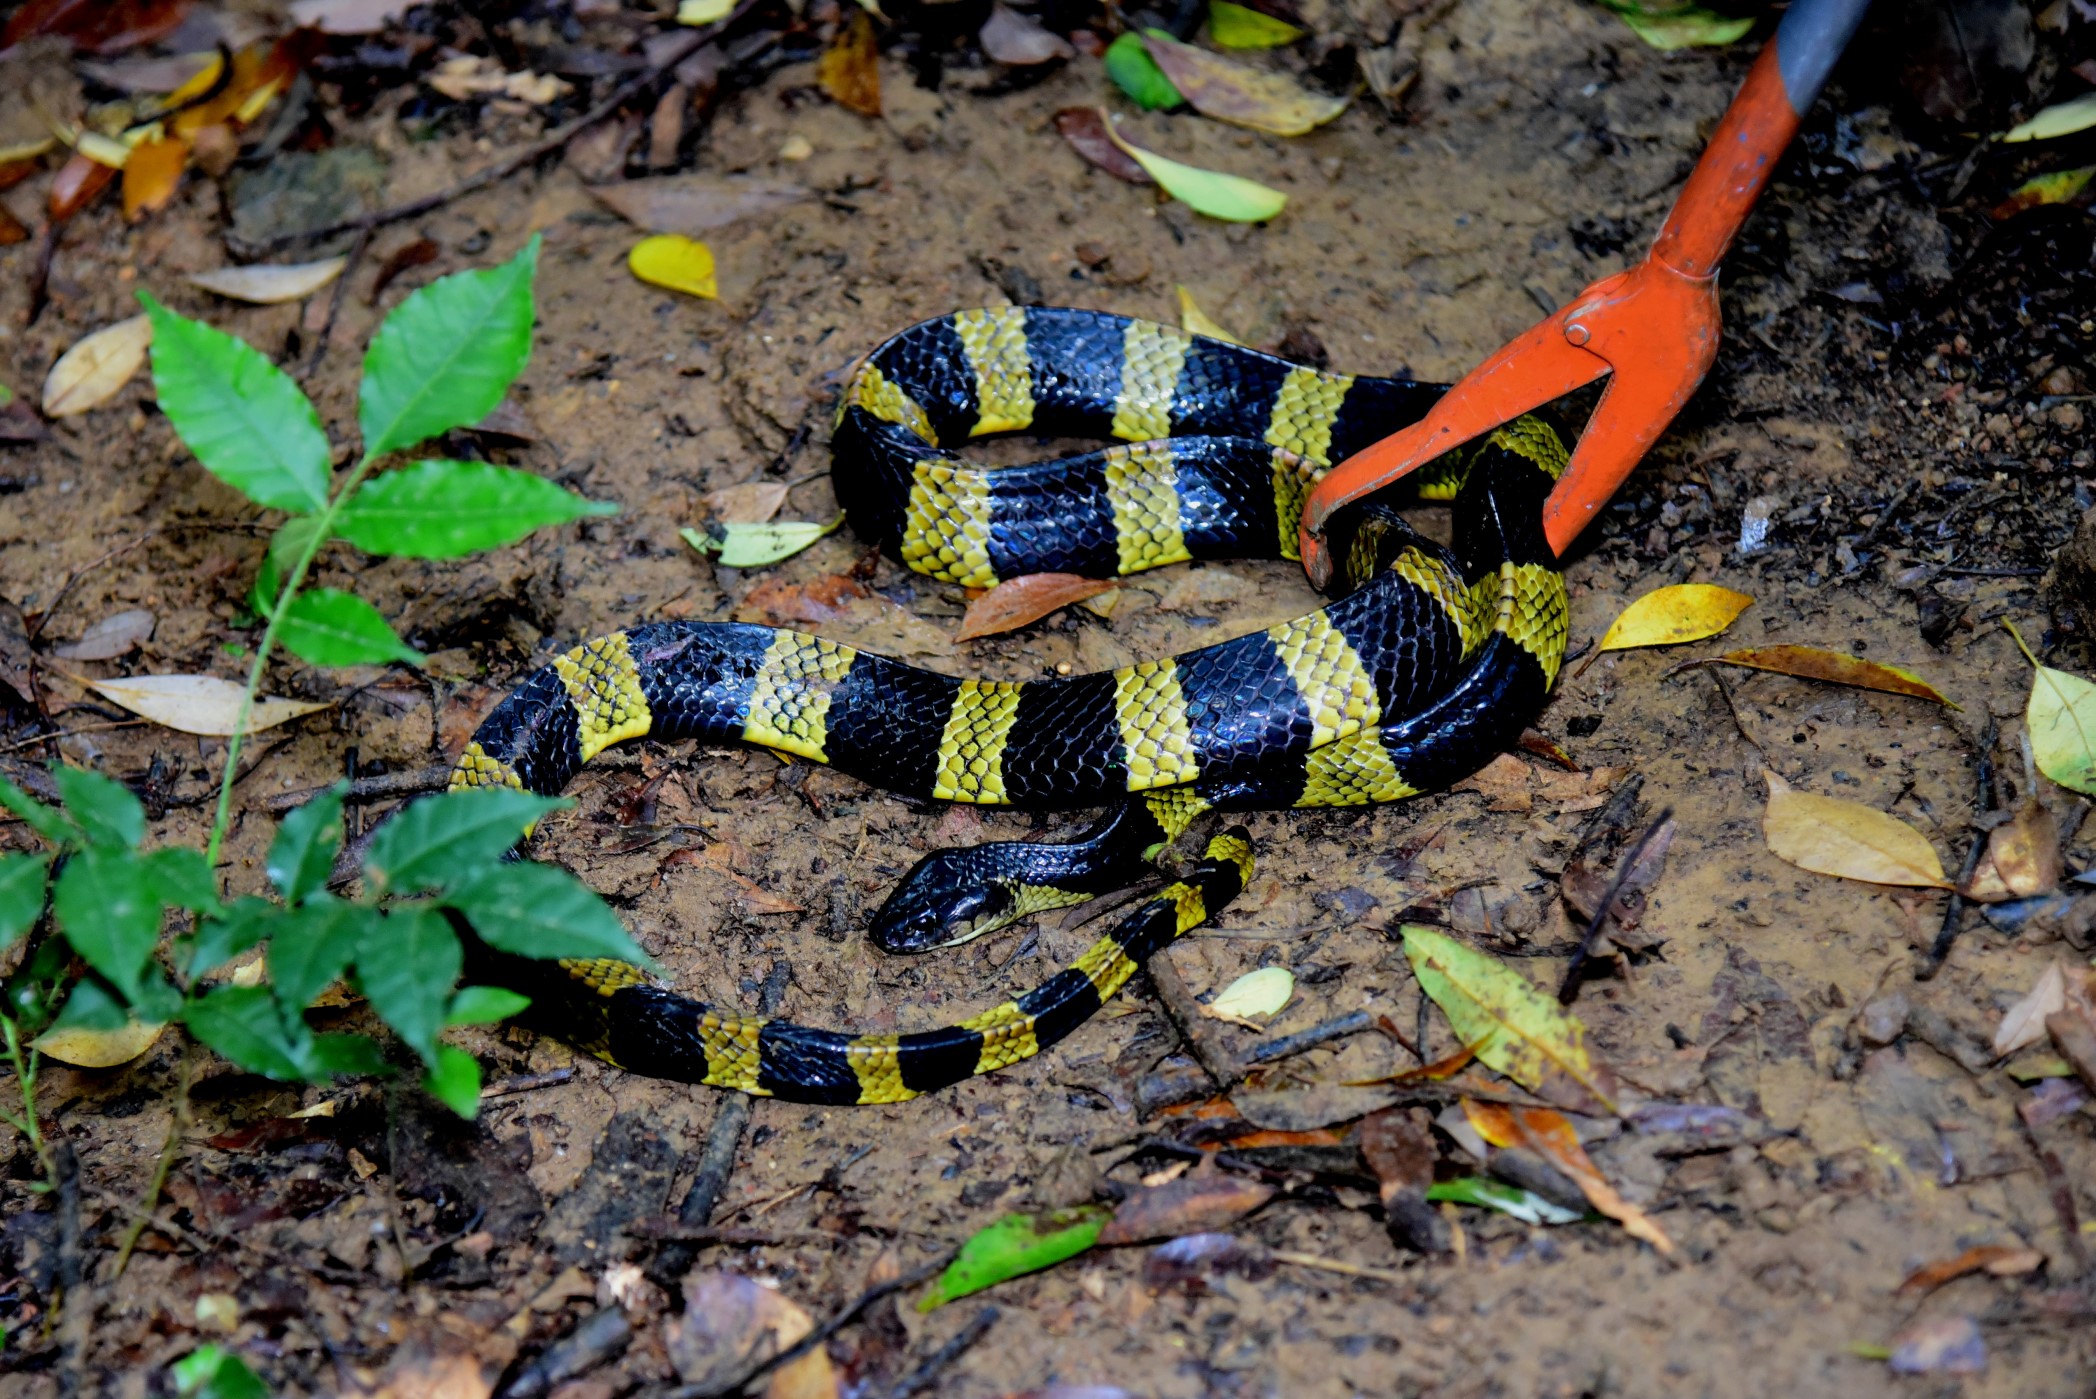 金腳帶（Bungarus fasciatus），是香港較少見的蛇類，為有毒蛇類。這條美麗的蛇於遠離民居的野外地區野放。